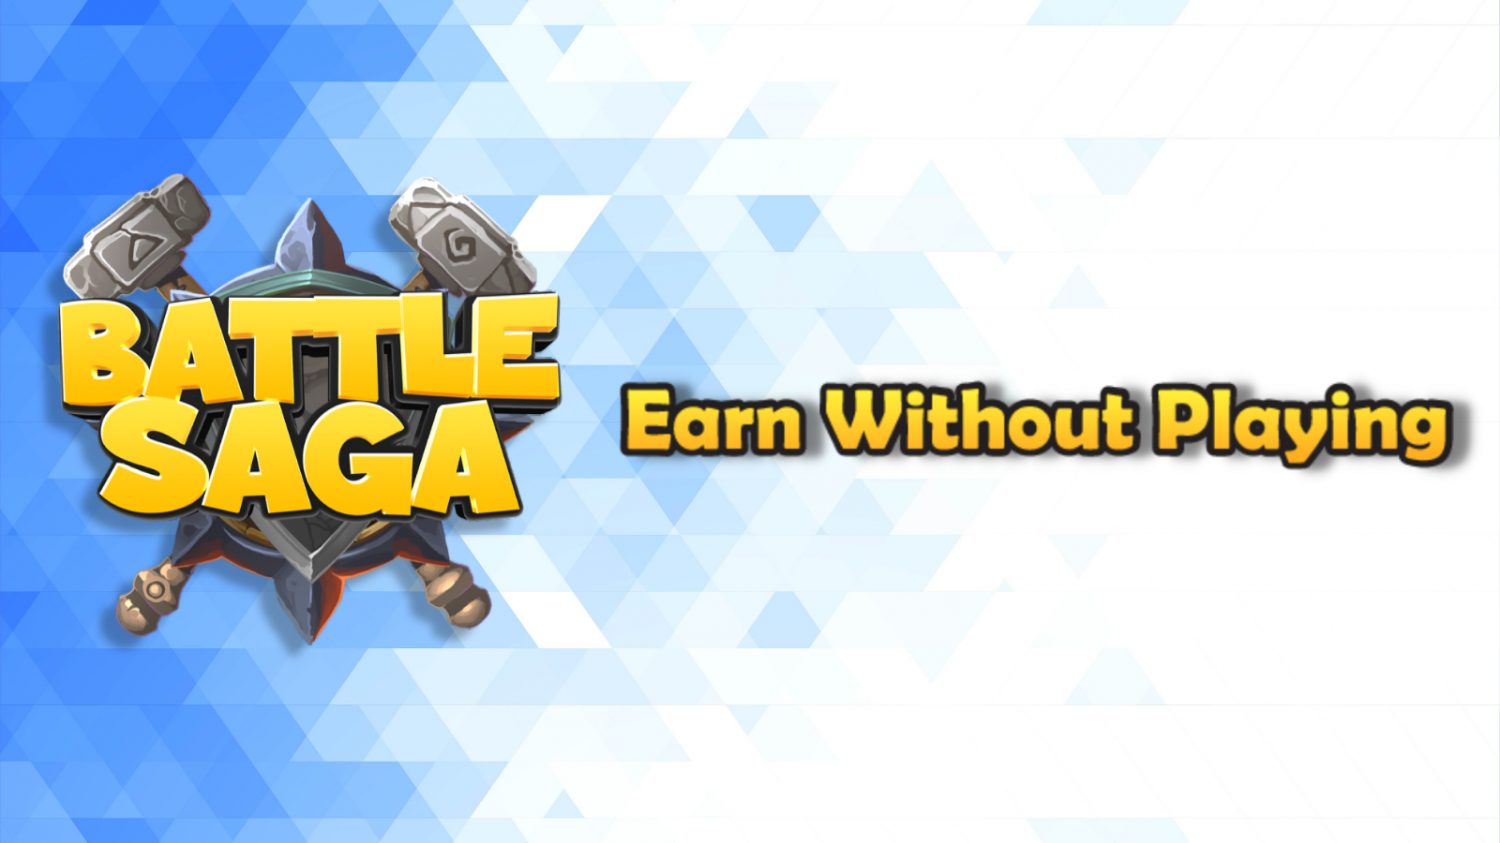 Strategic NFT Game Battle Saga Introduces New Earning Economy